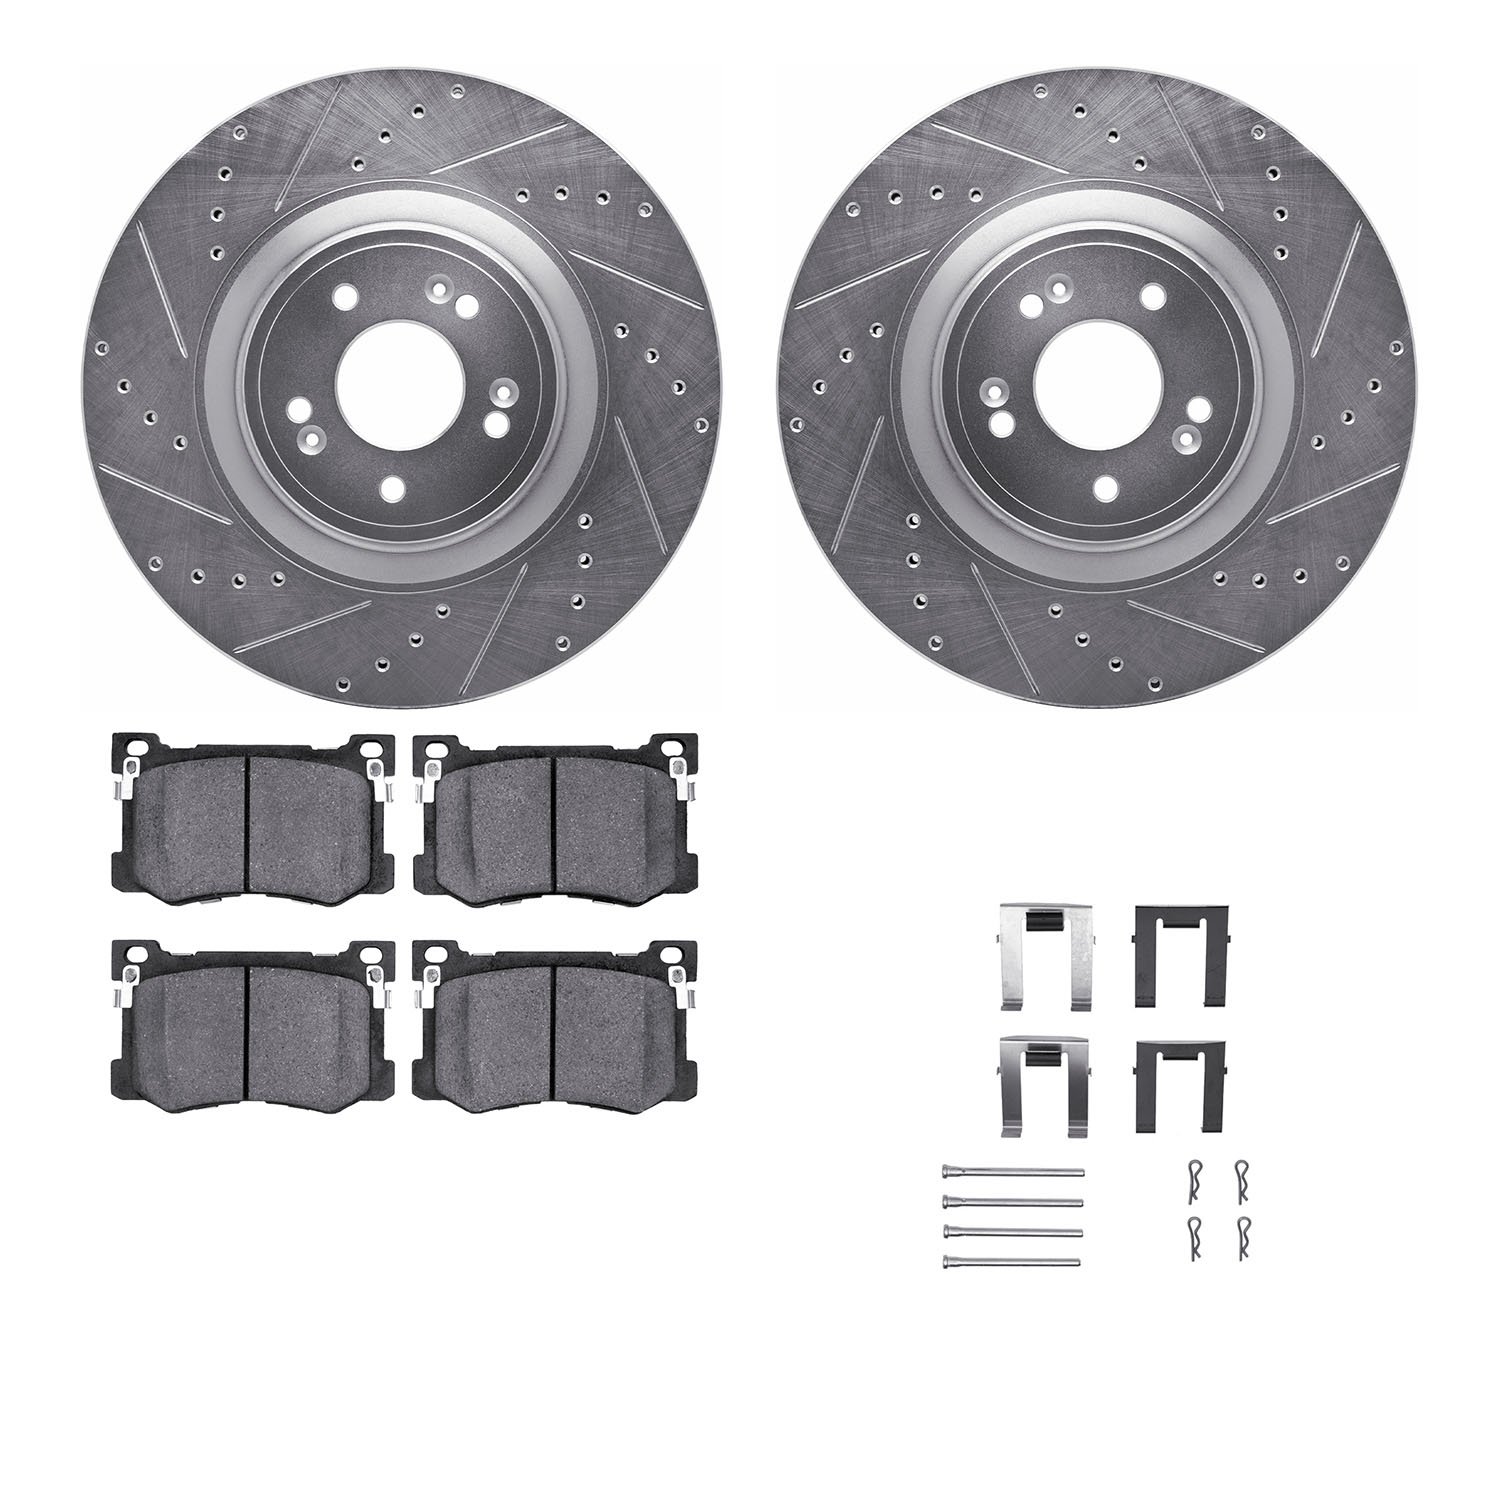 7312-03078 Drilled/Slotted Brake Rotor with 3000-Series Ceramic Brake Pads Kit & Hardware [Silver], 2018-2020 Kia/Hyundai/Genesi